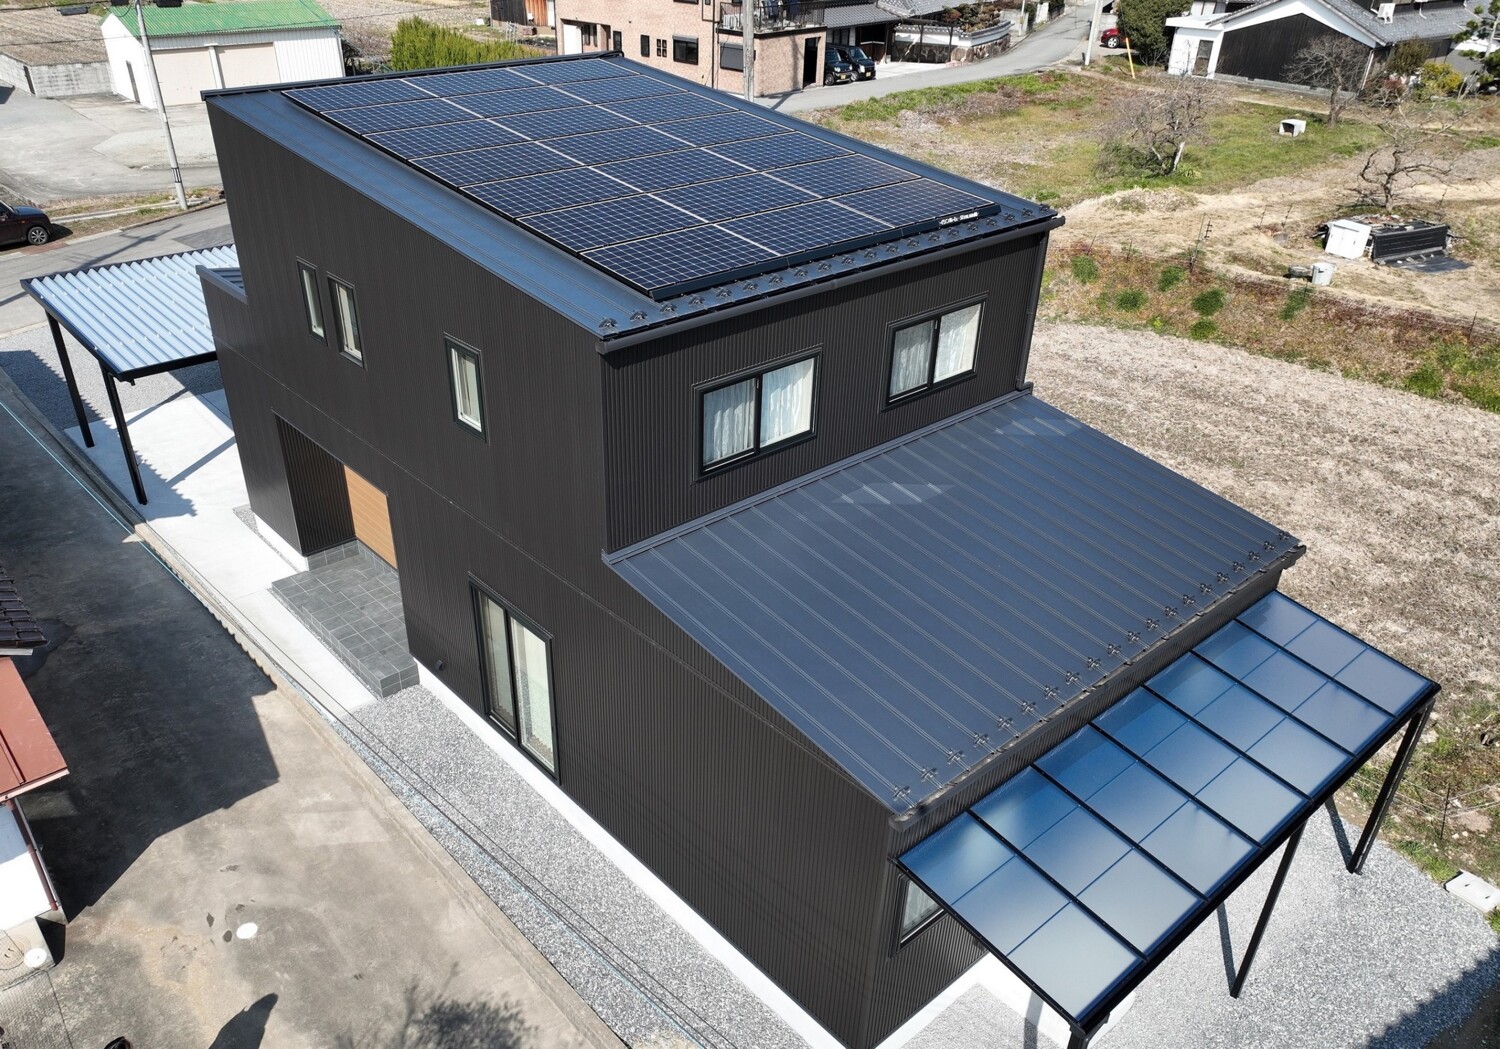 オールブラックのスタイリッシュな外観～快適なワークスペースのある暮らし～
太陽光発電8.4kW搭載
